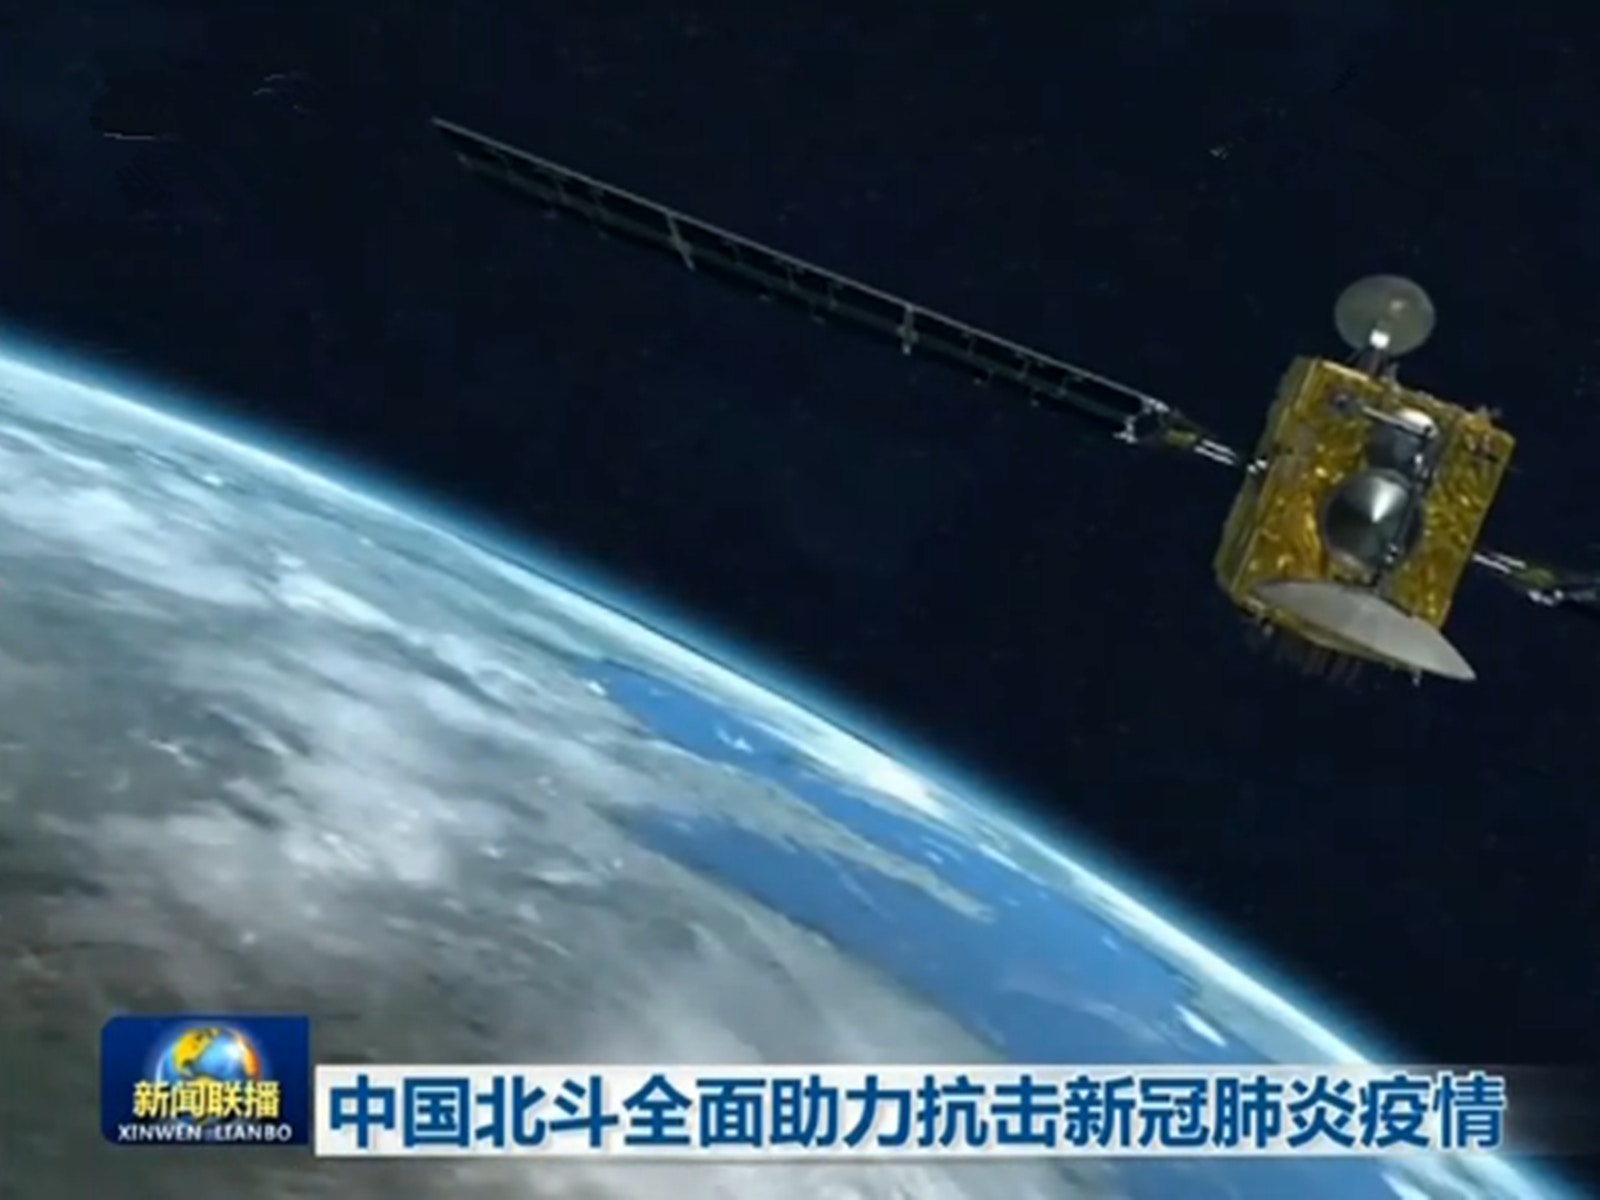 觀察 最後一顆全球組網衛星升空北斗三號全面國產化的背後 香港01 觀察分析